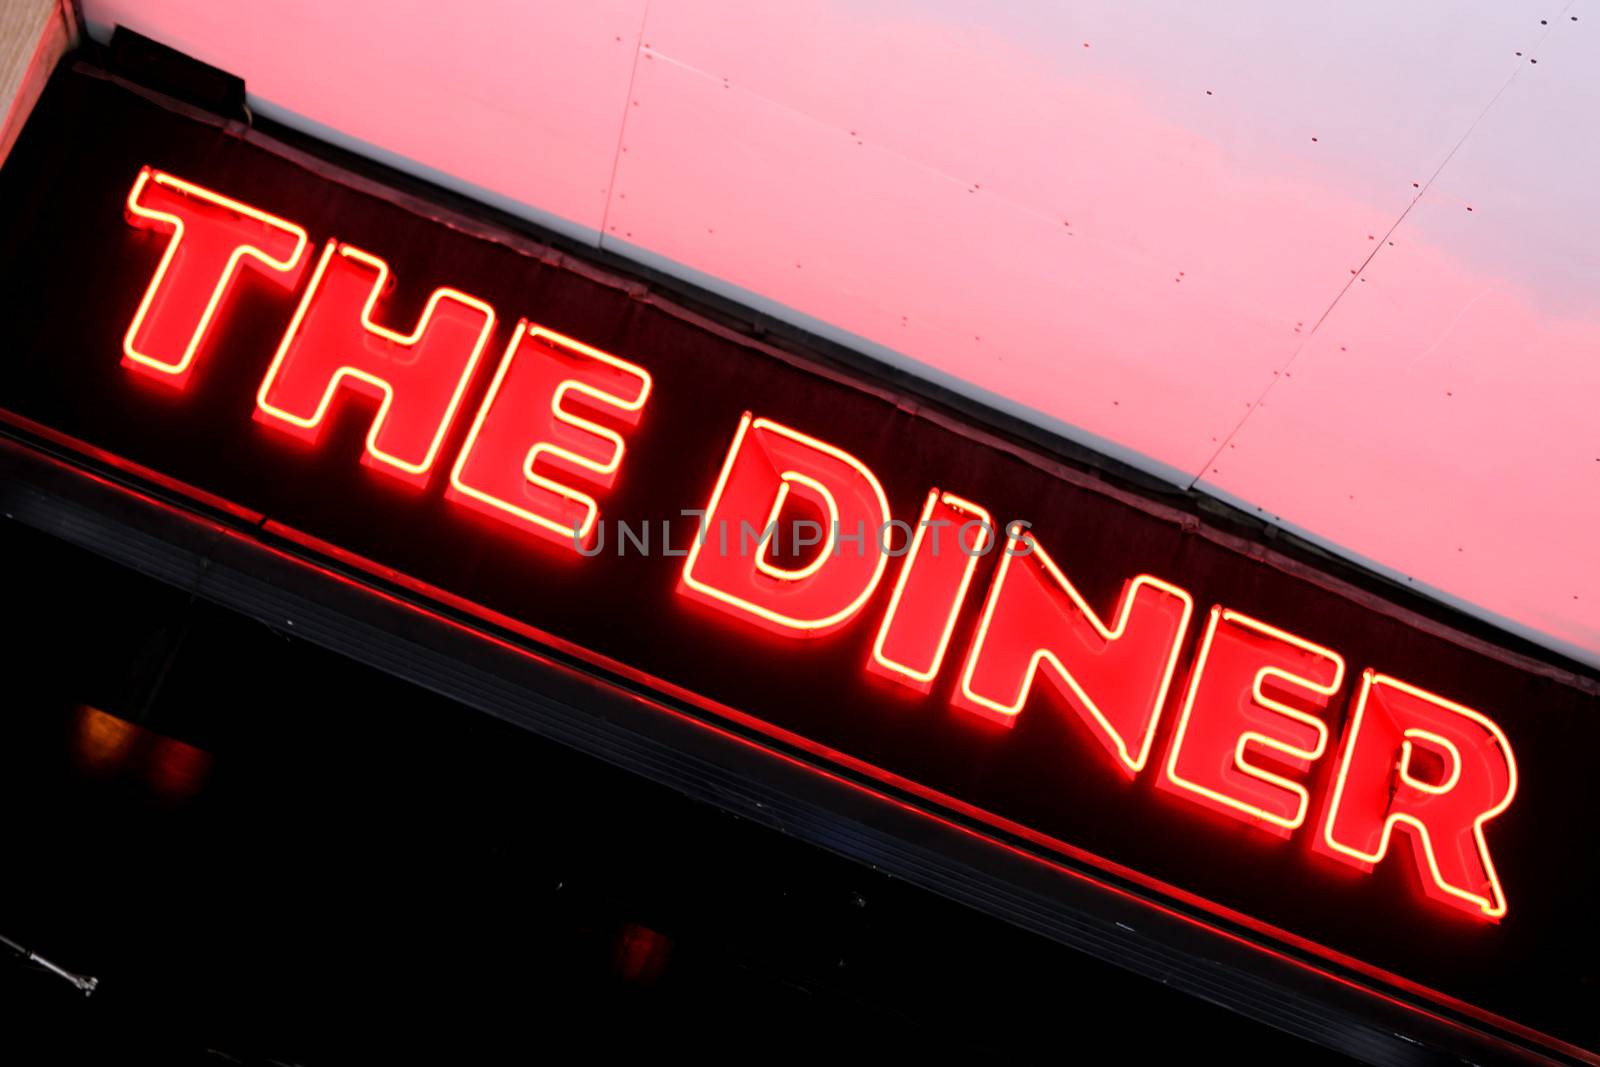 The Diner Restaurant Sign Ganton Street London